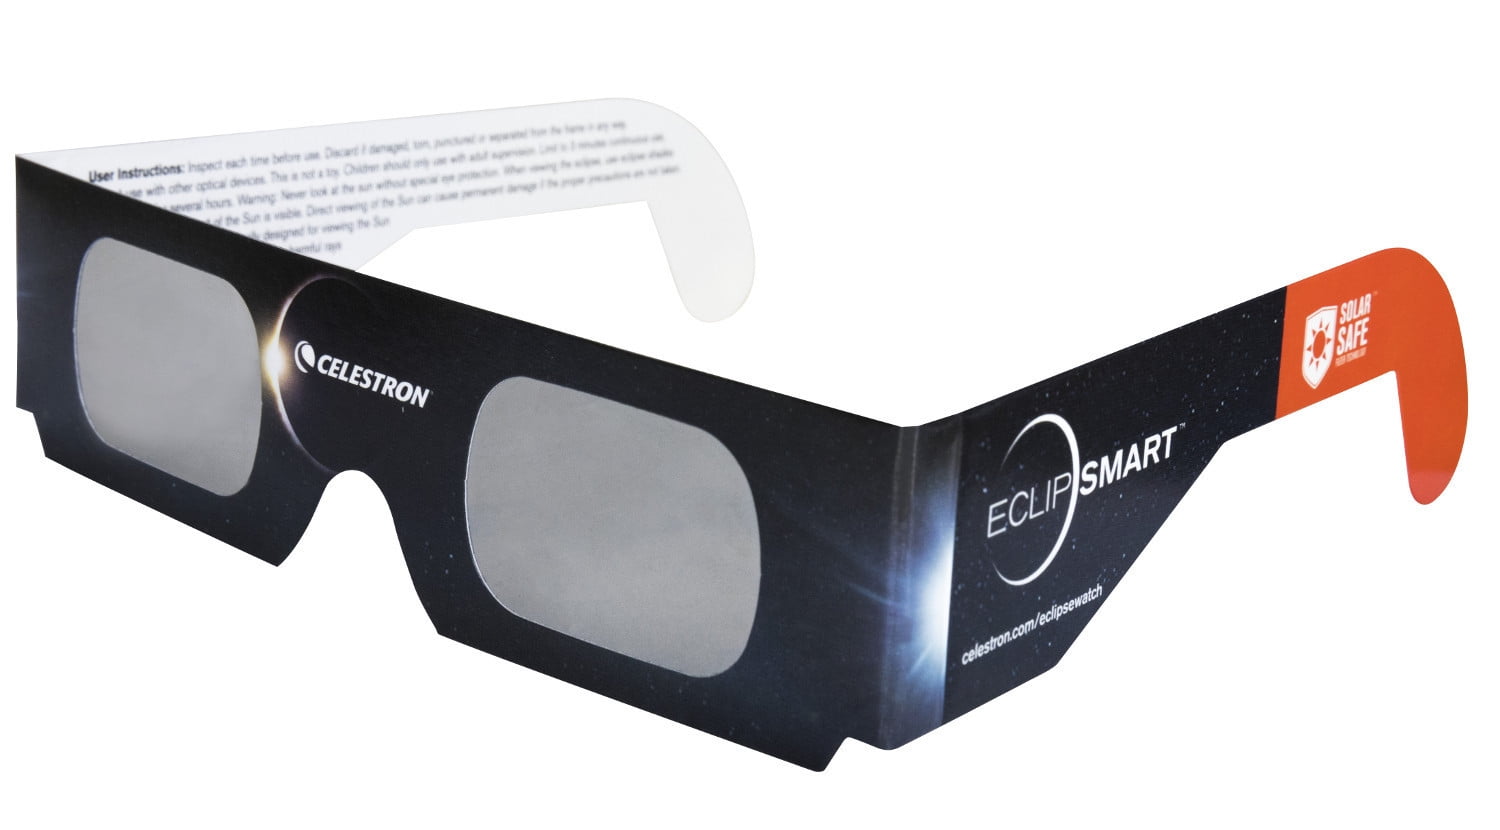 Eclipse 900-124 - Magnifier